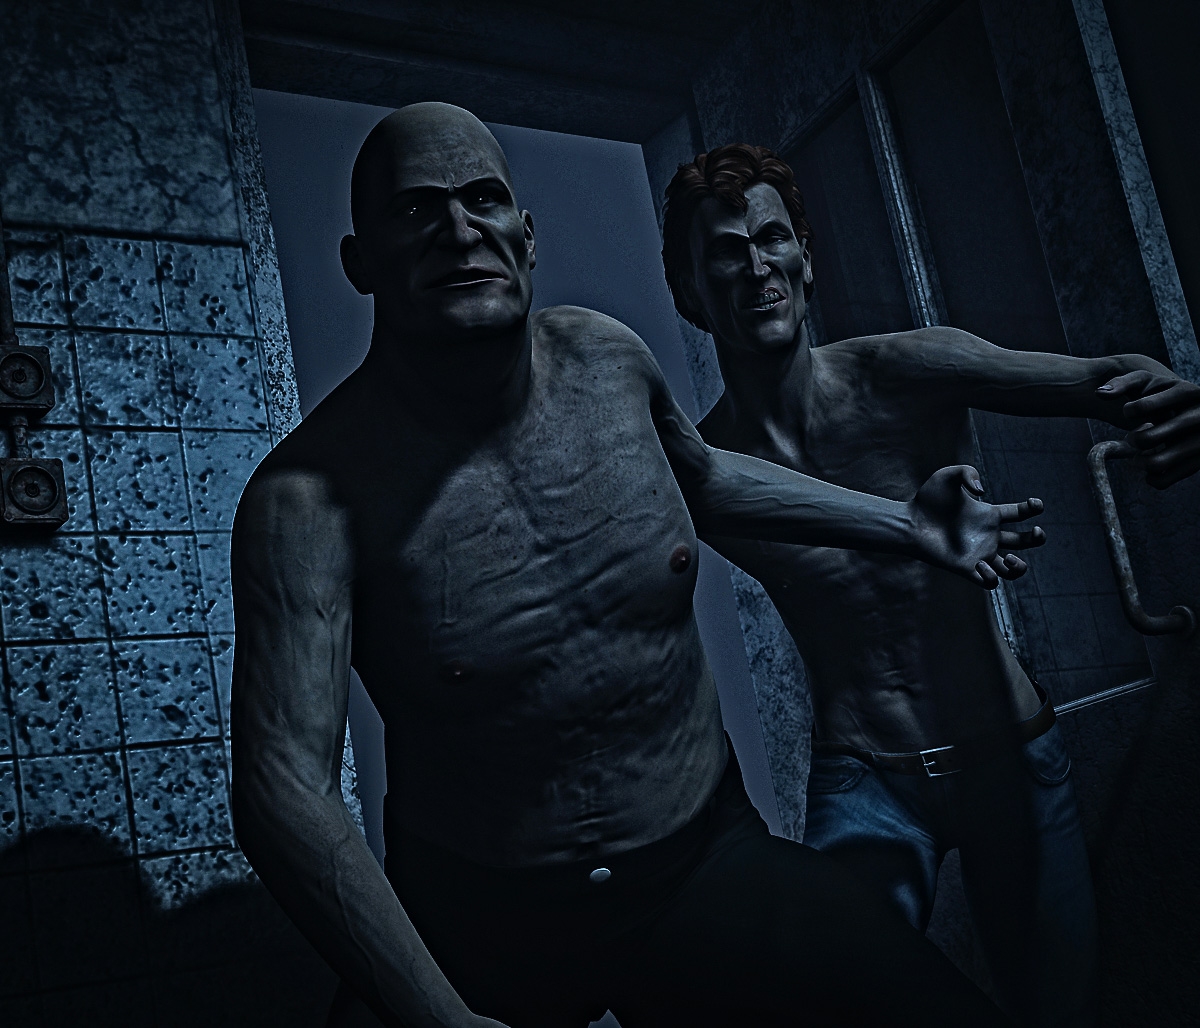 Darkseid6911-The Asylum episode 1